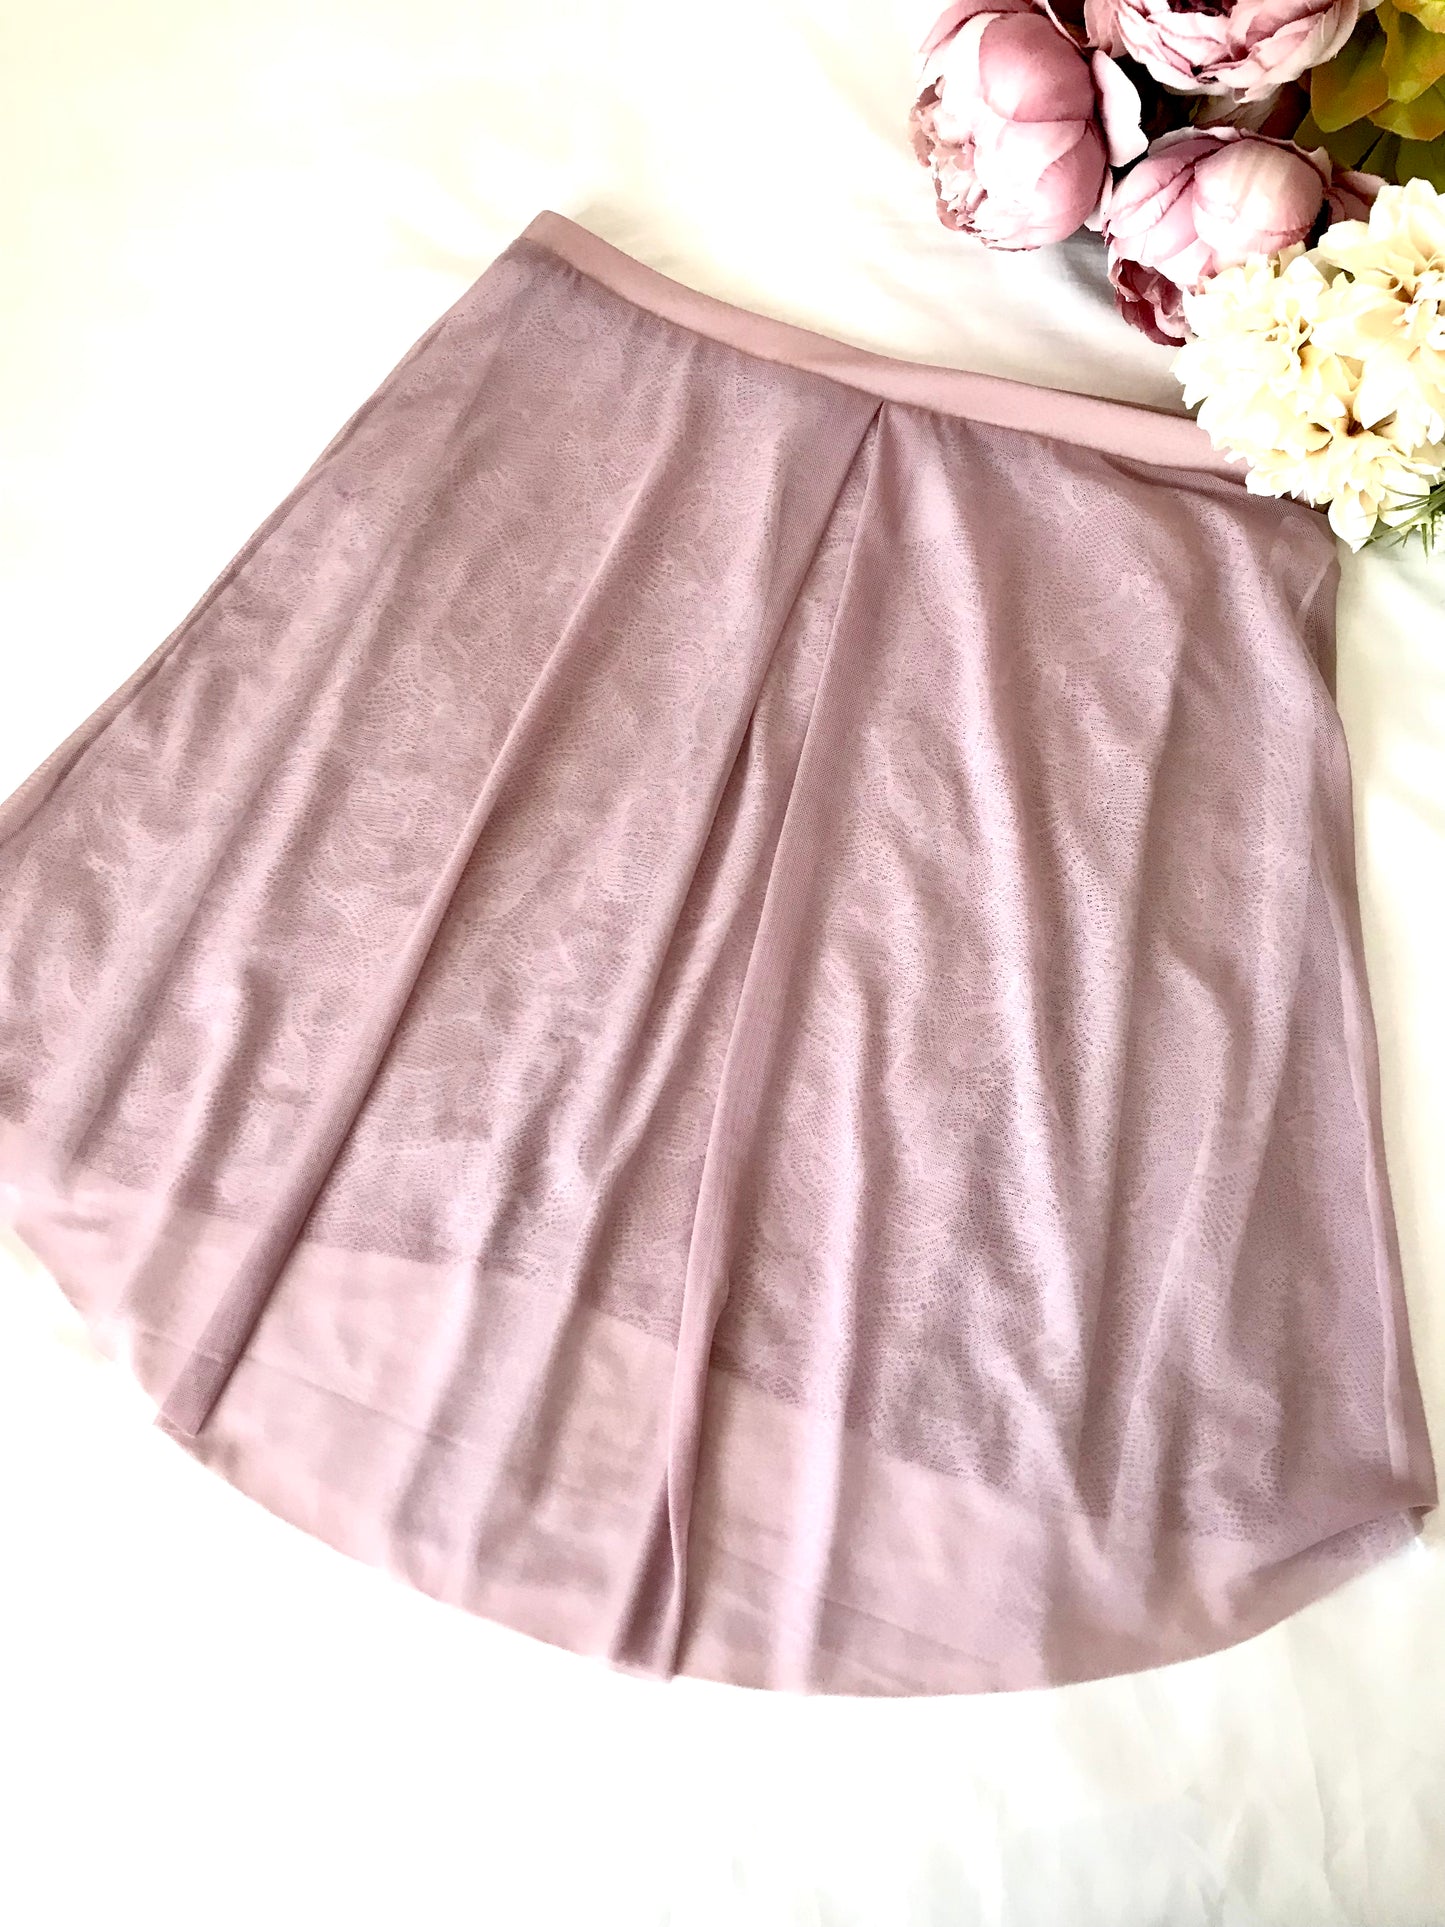 Reversible Lace Skirt (Mellow Mauve)